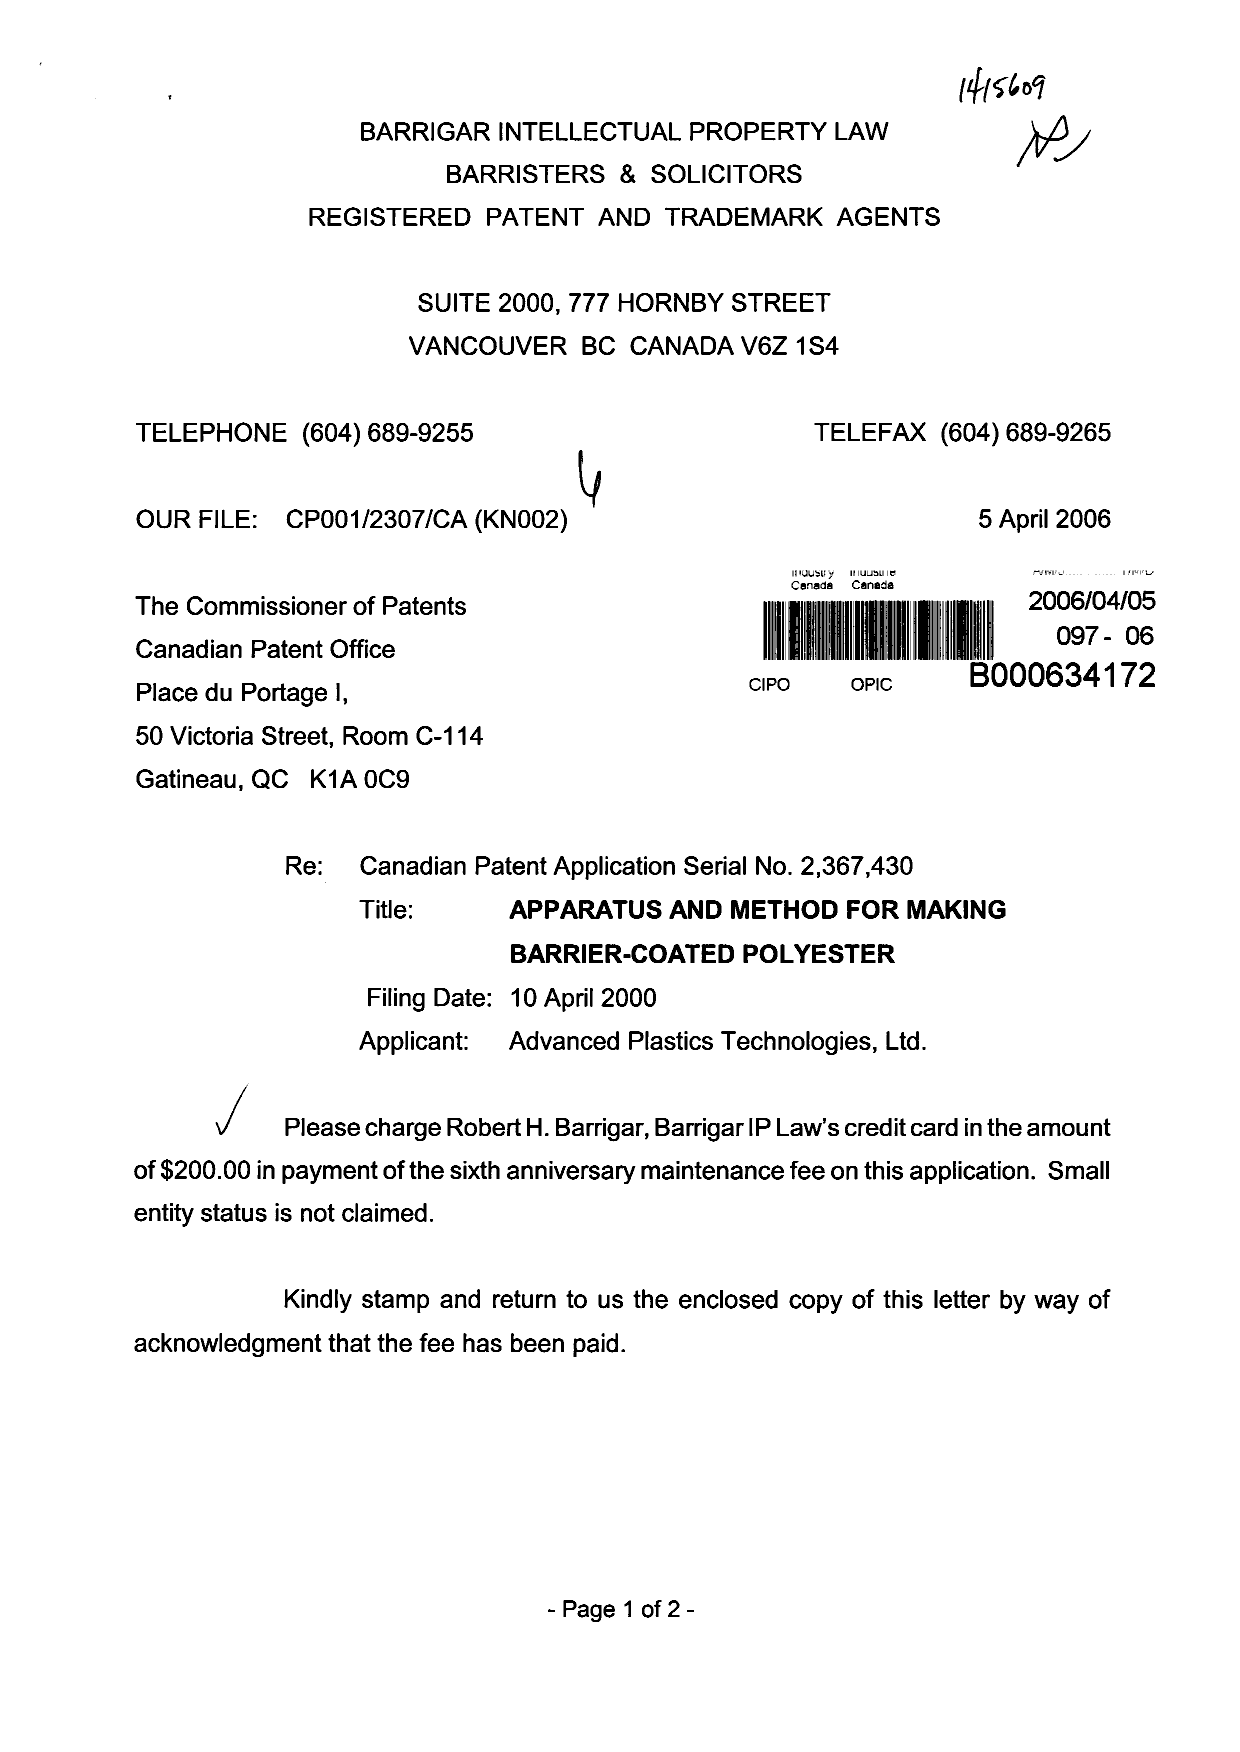 Document de brevet canadien 2367430. Taxes 20060405. Image 1 de 2